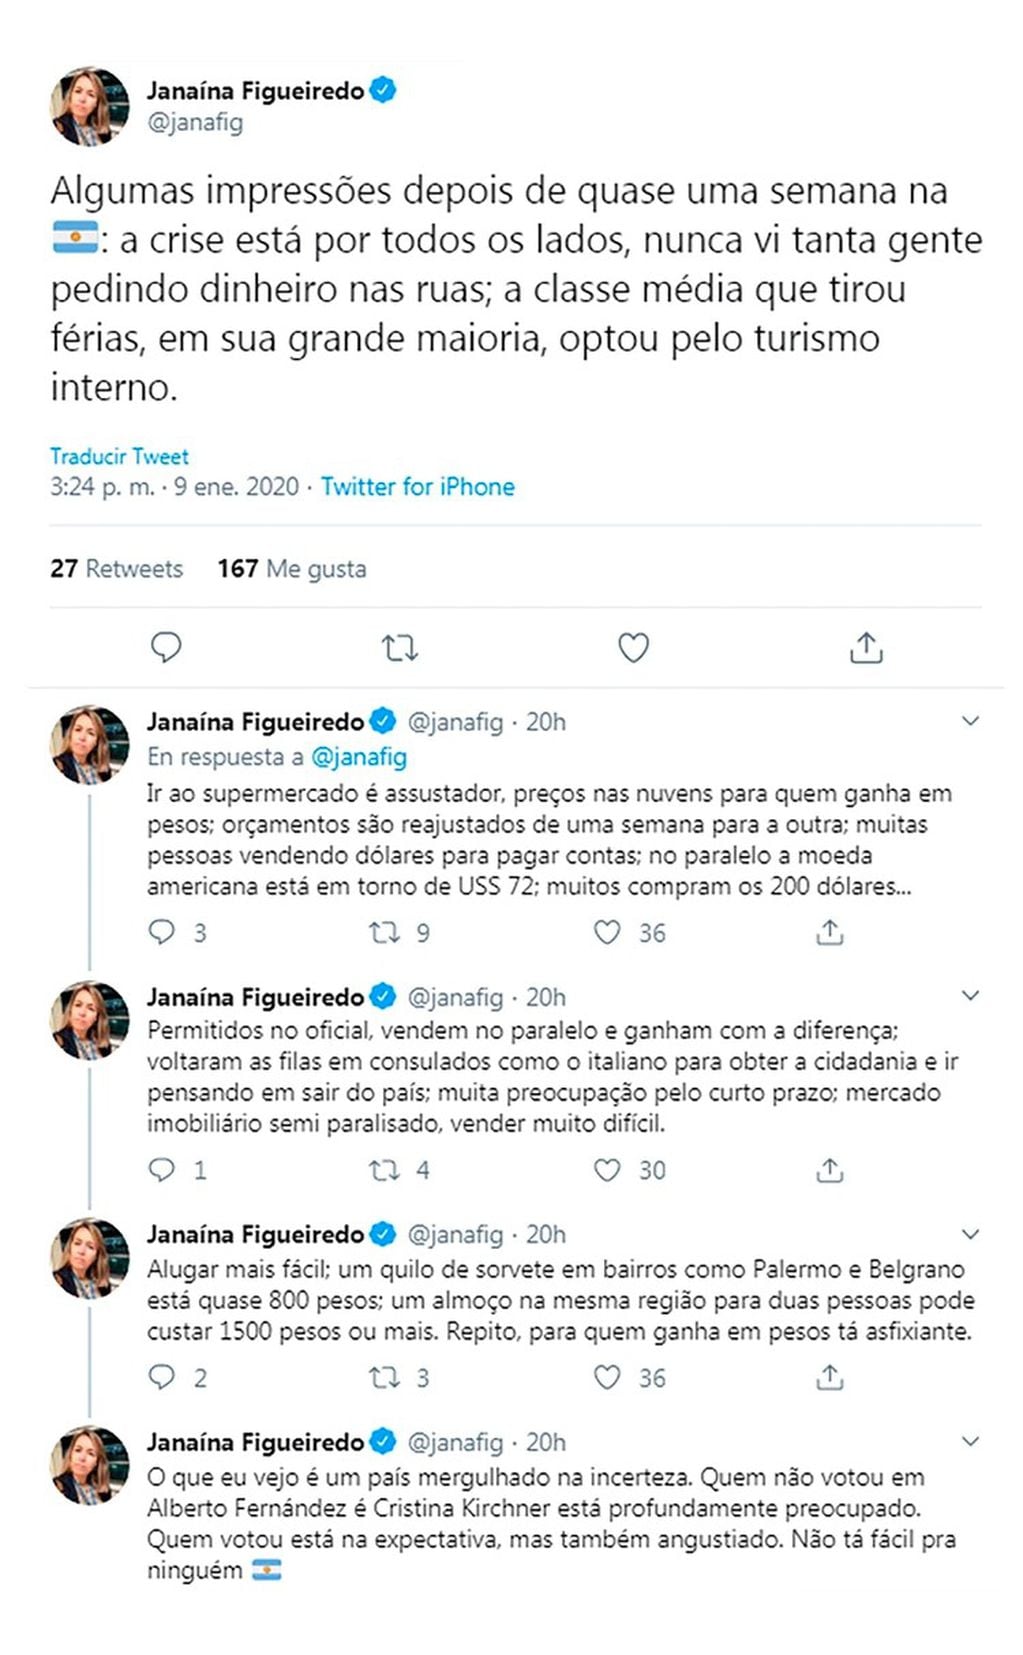 La periodista brasileña Janaína Figueiredo analizó en Twitter cómo viven los argentinos en medio de la crisis económica (Foto: Twitter/ @janafig)